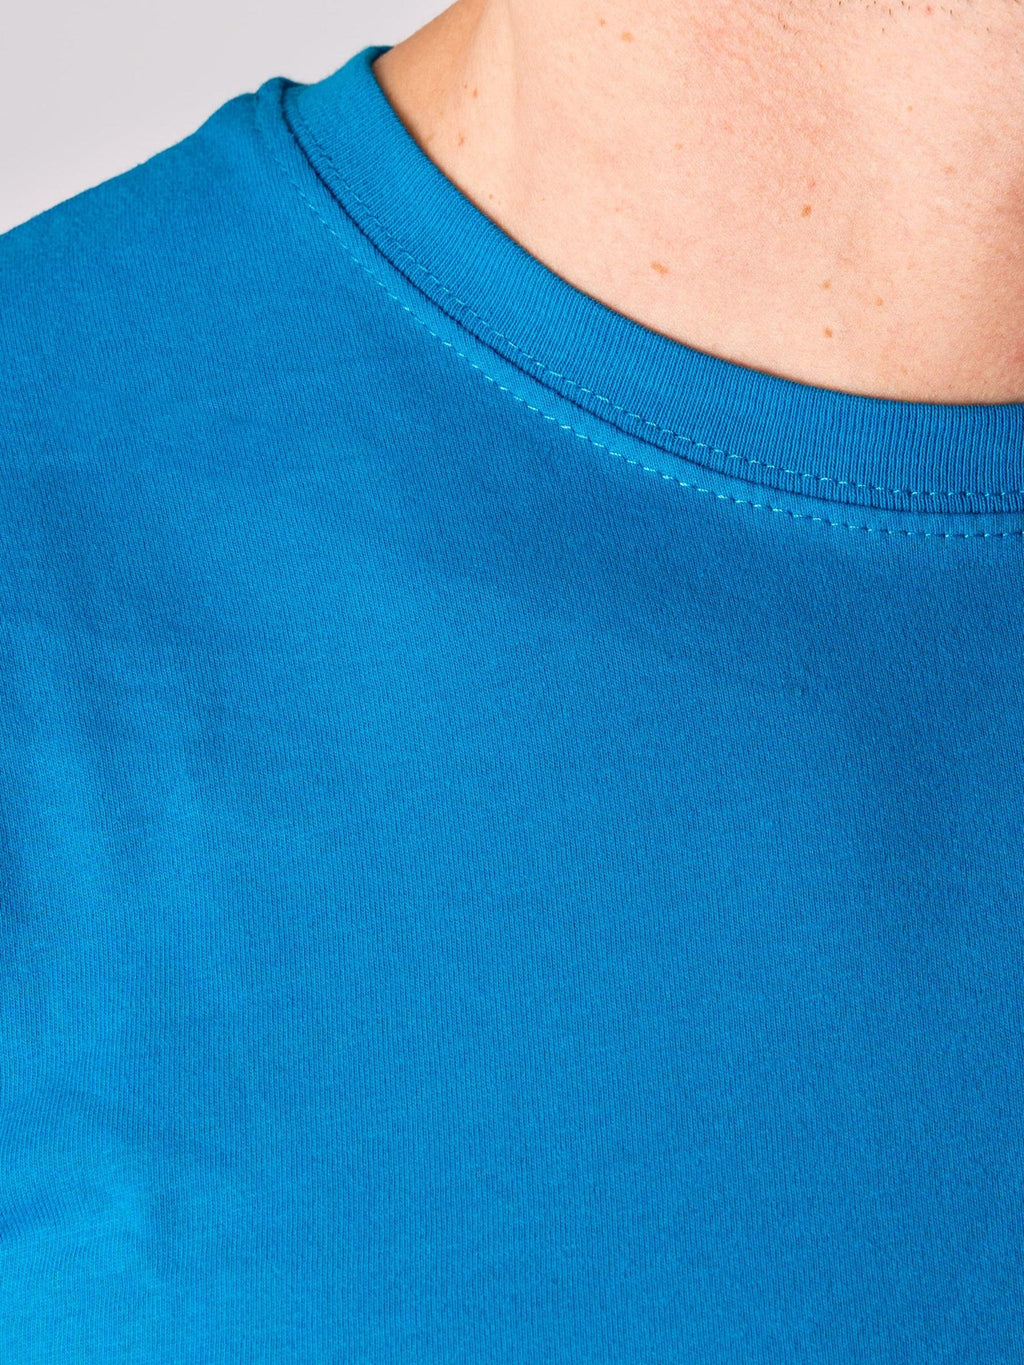 Orgánach Basic T -léine - gorm turquoise